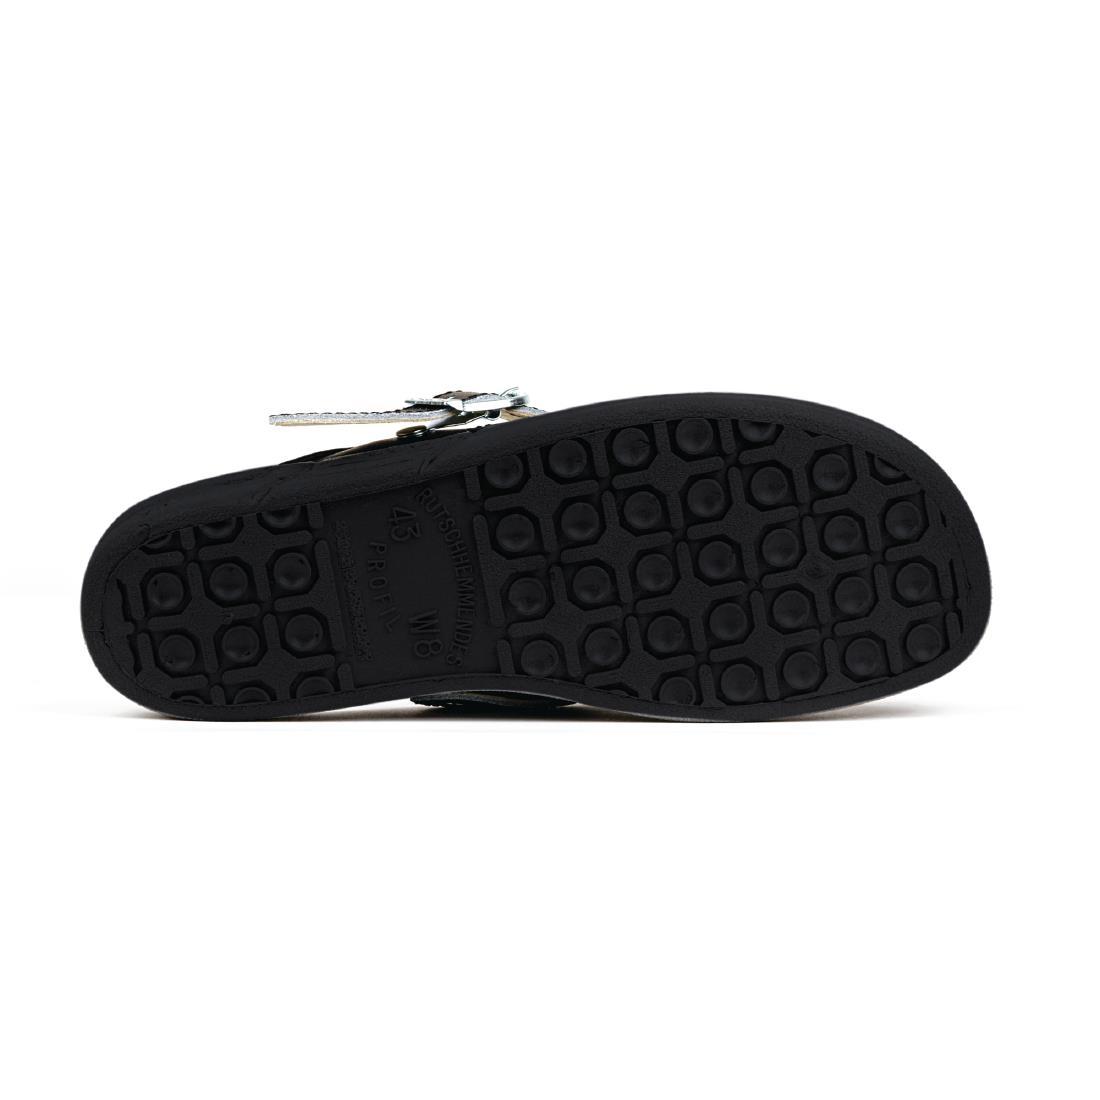 Abeba Microfibre Clogs Black Size 43 - A898-43  - 4